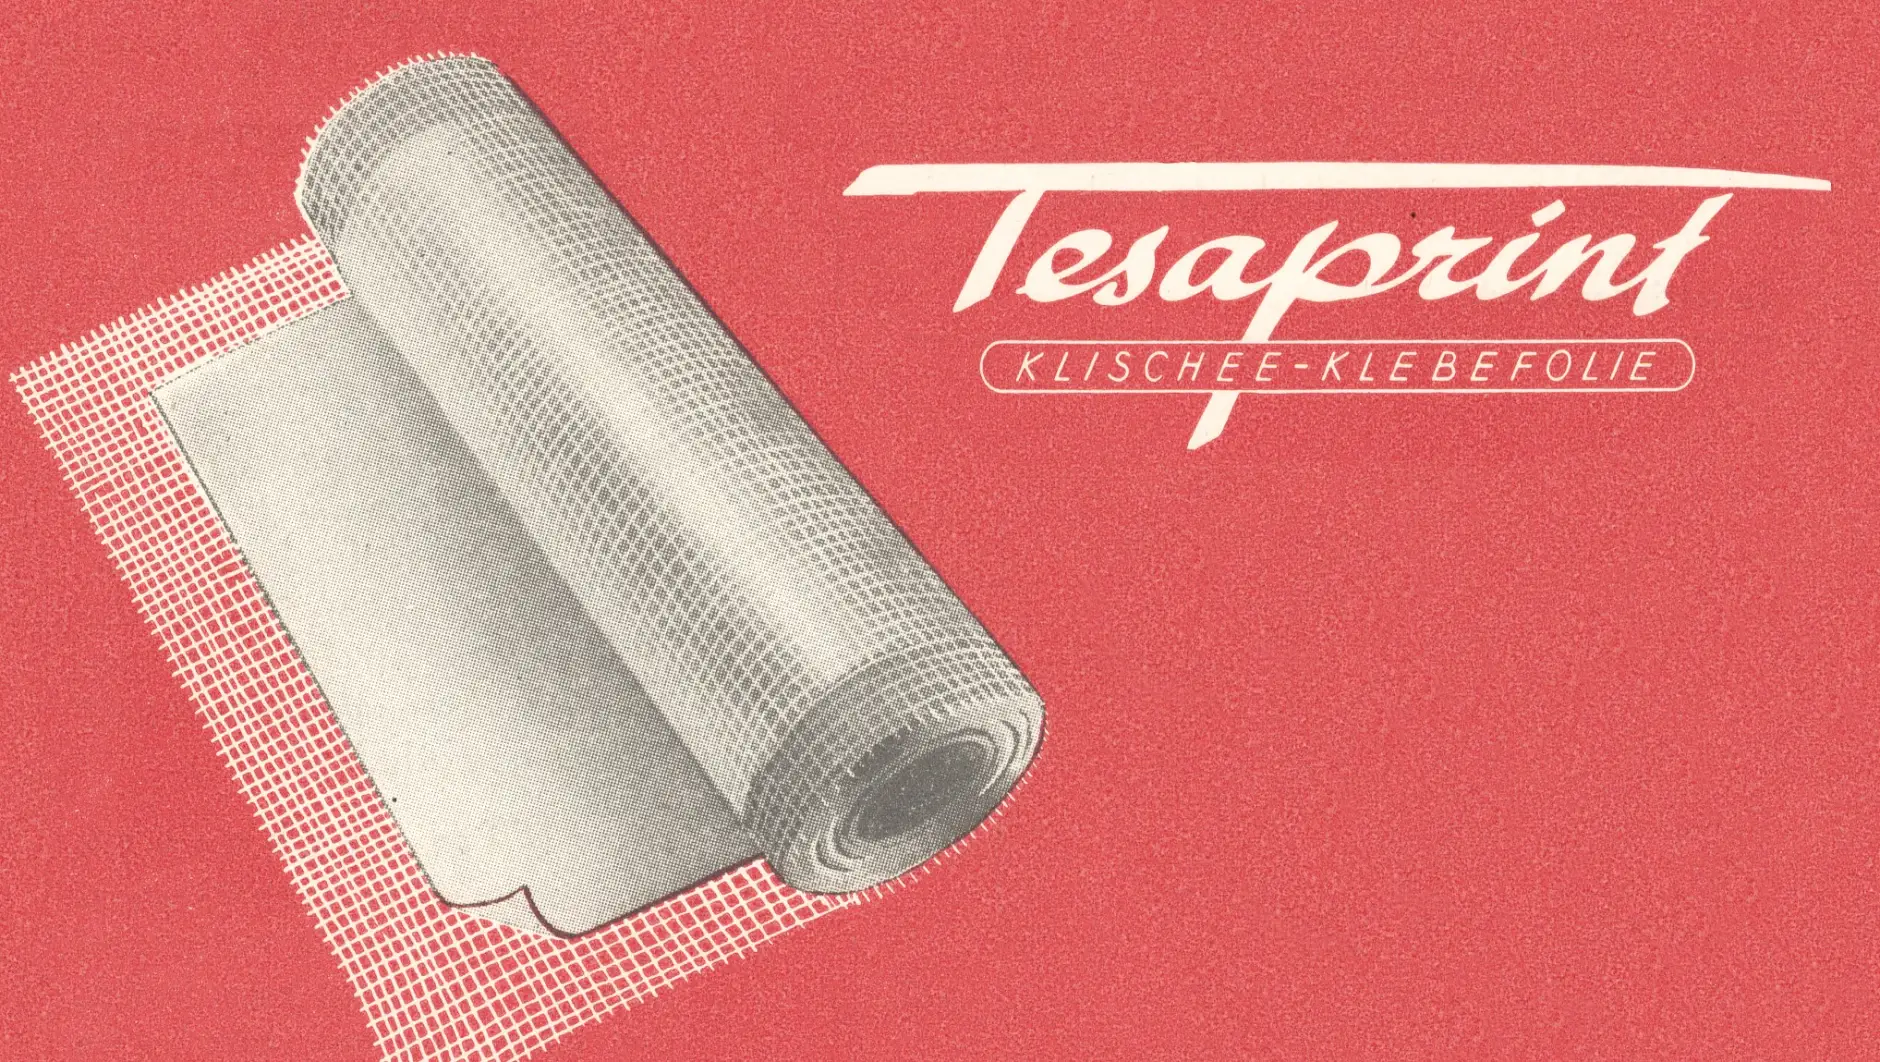 tesaprint ble brukt i trykkeribransjen helt tilbake i 1949.